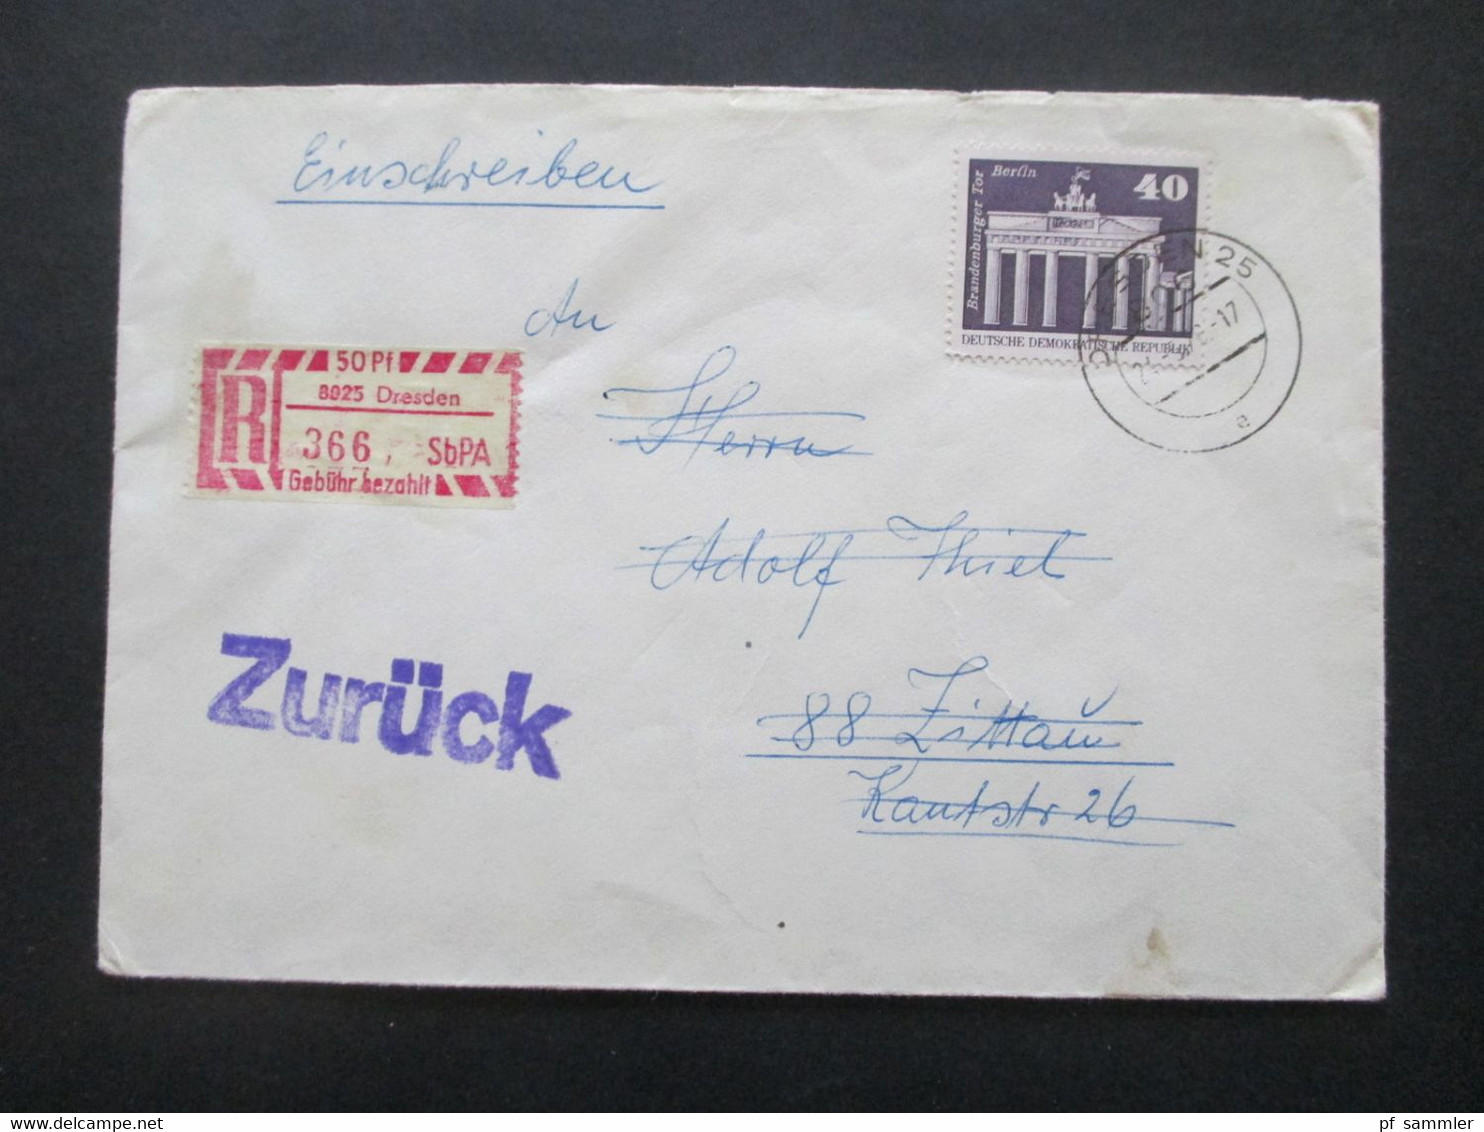 DDR 1970er Jahre Insgesamt 28 Belege Wertbriefe / Einschreiben! Schöne Frankaturen / Auch Einheiten! Stöberposten! - Covers & Documents